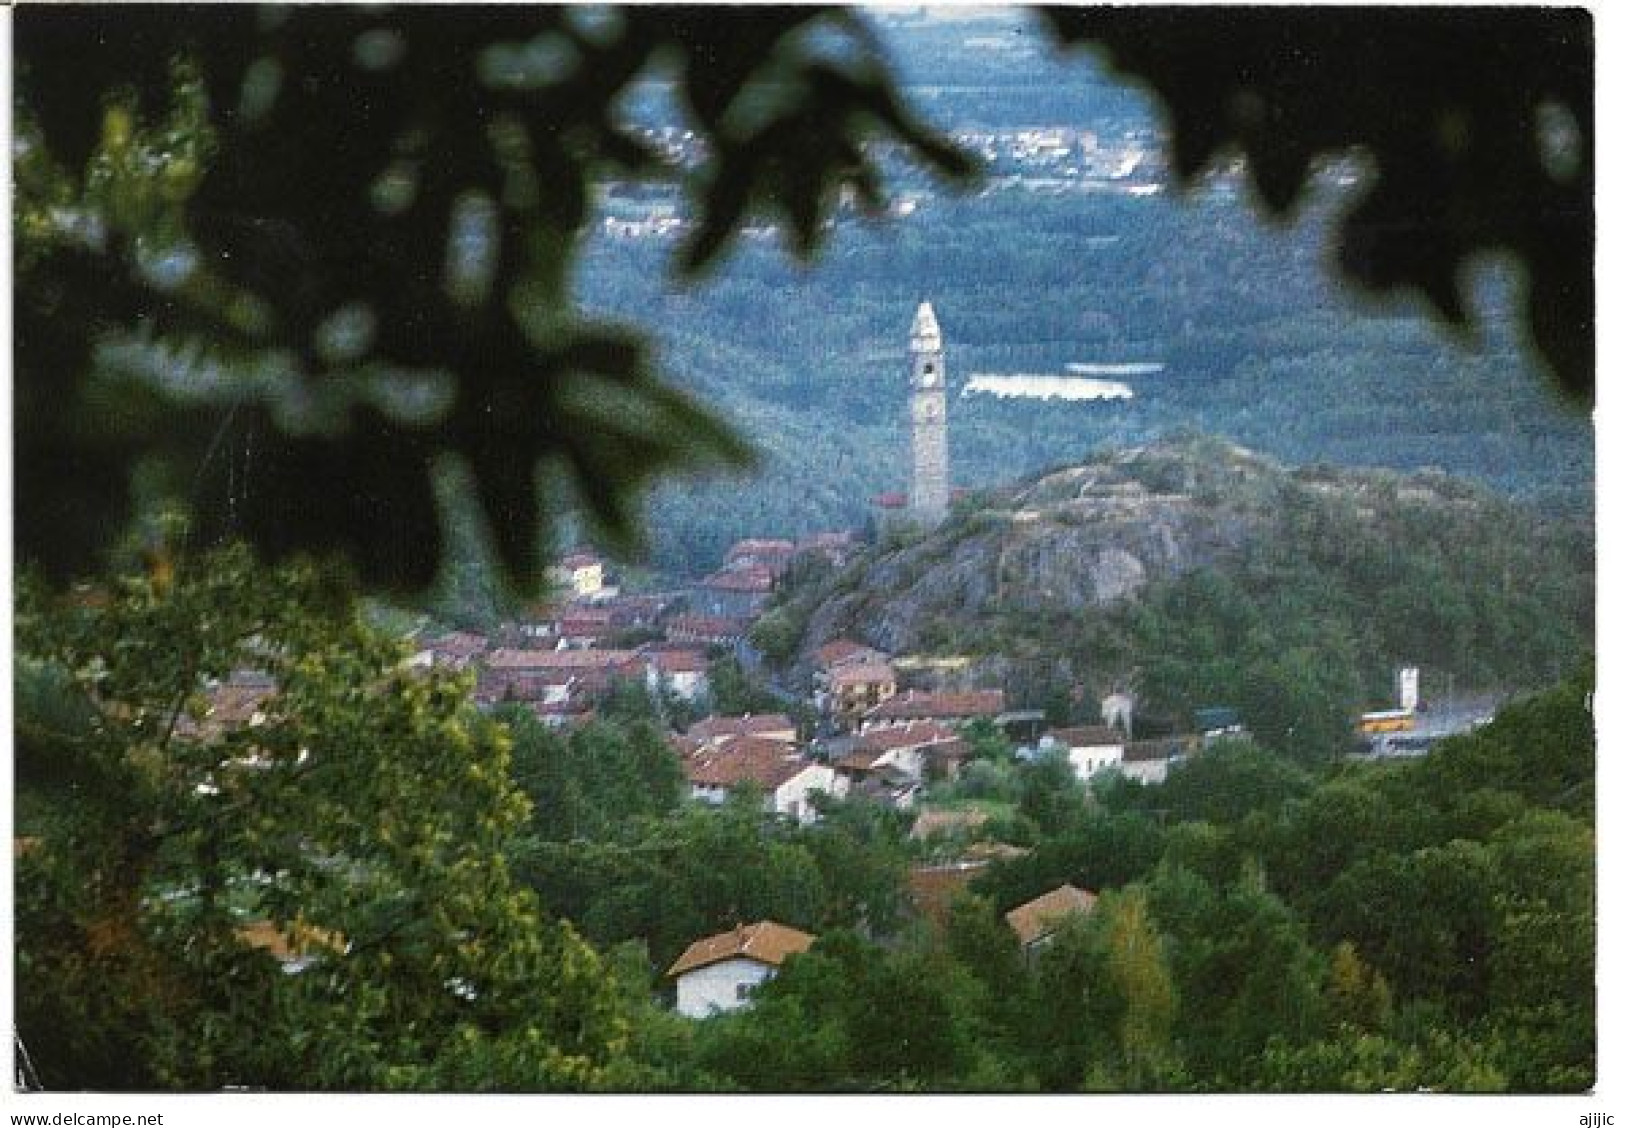 Chiaverano (City Of Torino) Postcard - Panoramische Zichten, Meerdere Zichten